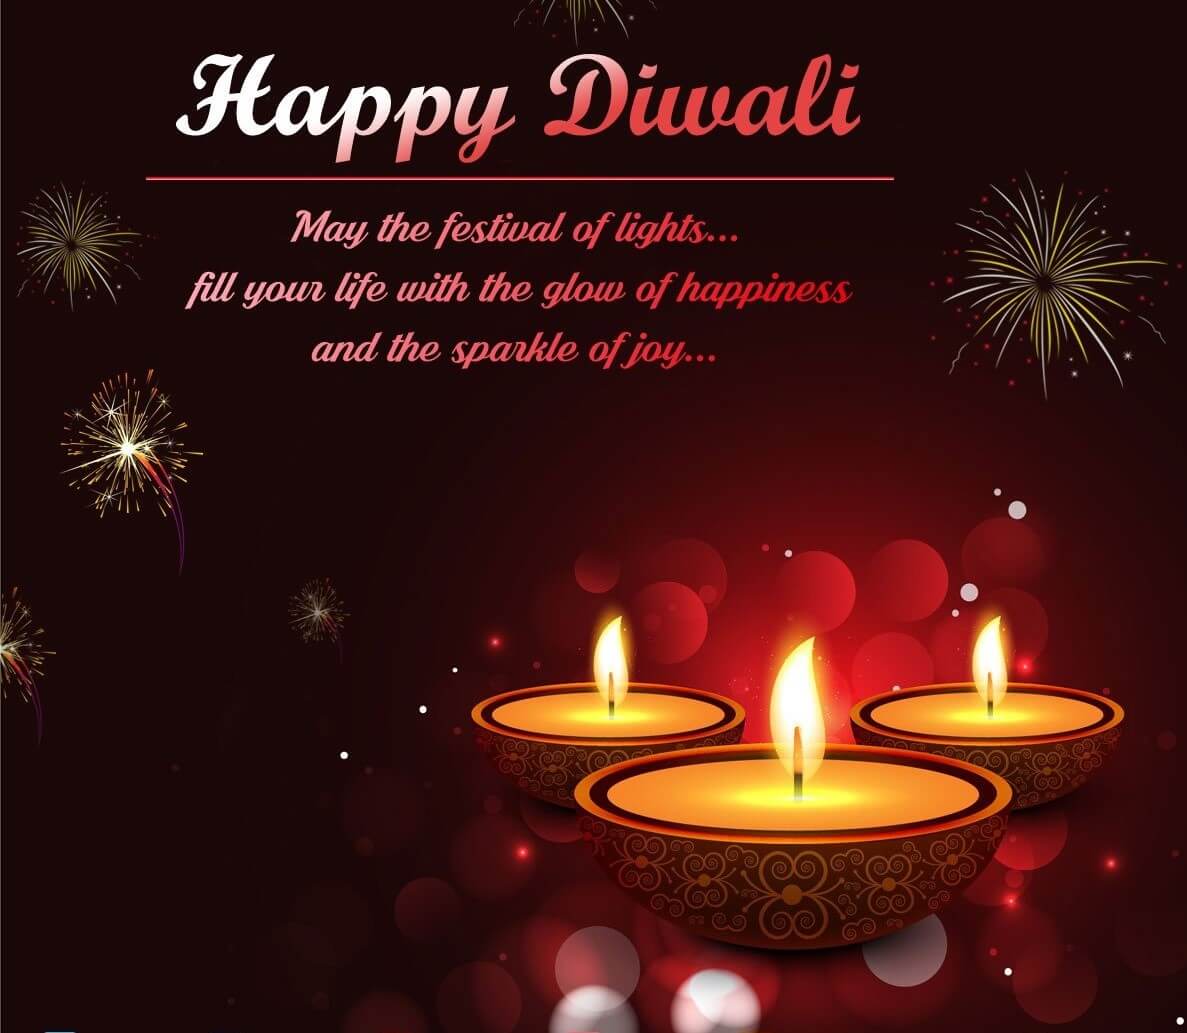 Diwali images for Facebook 